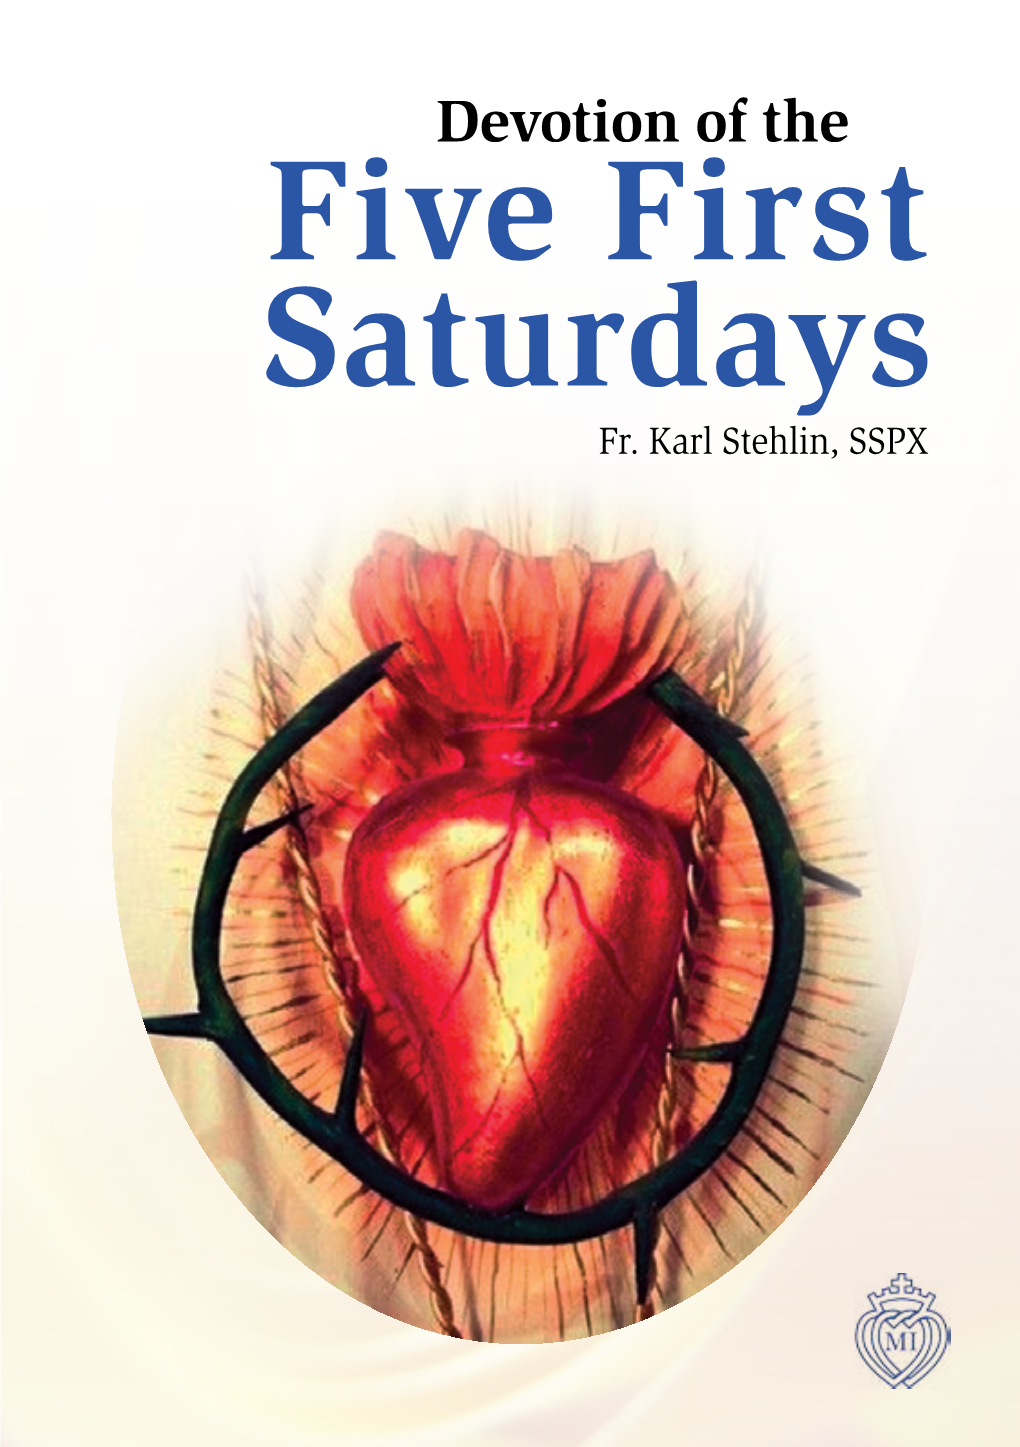 Five First Saturdays Fr